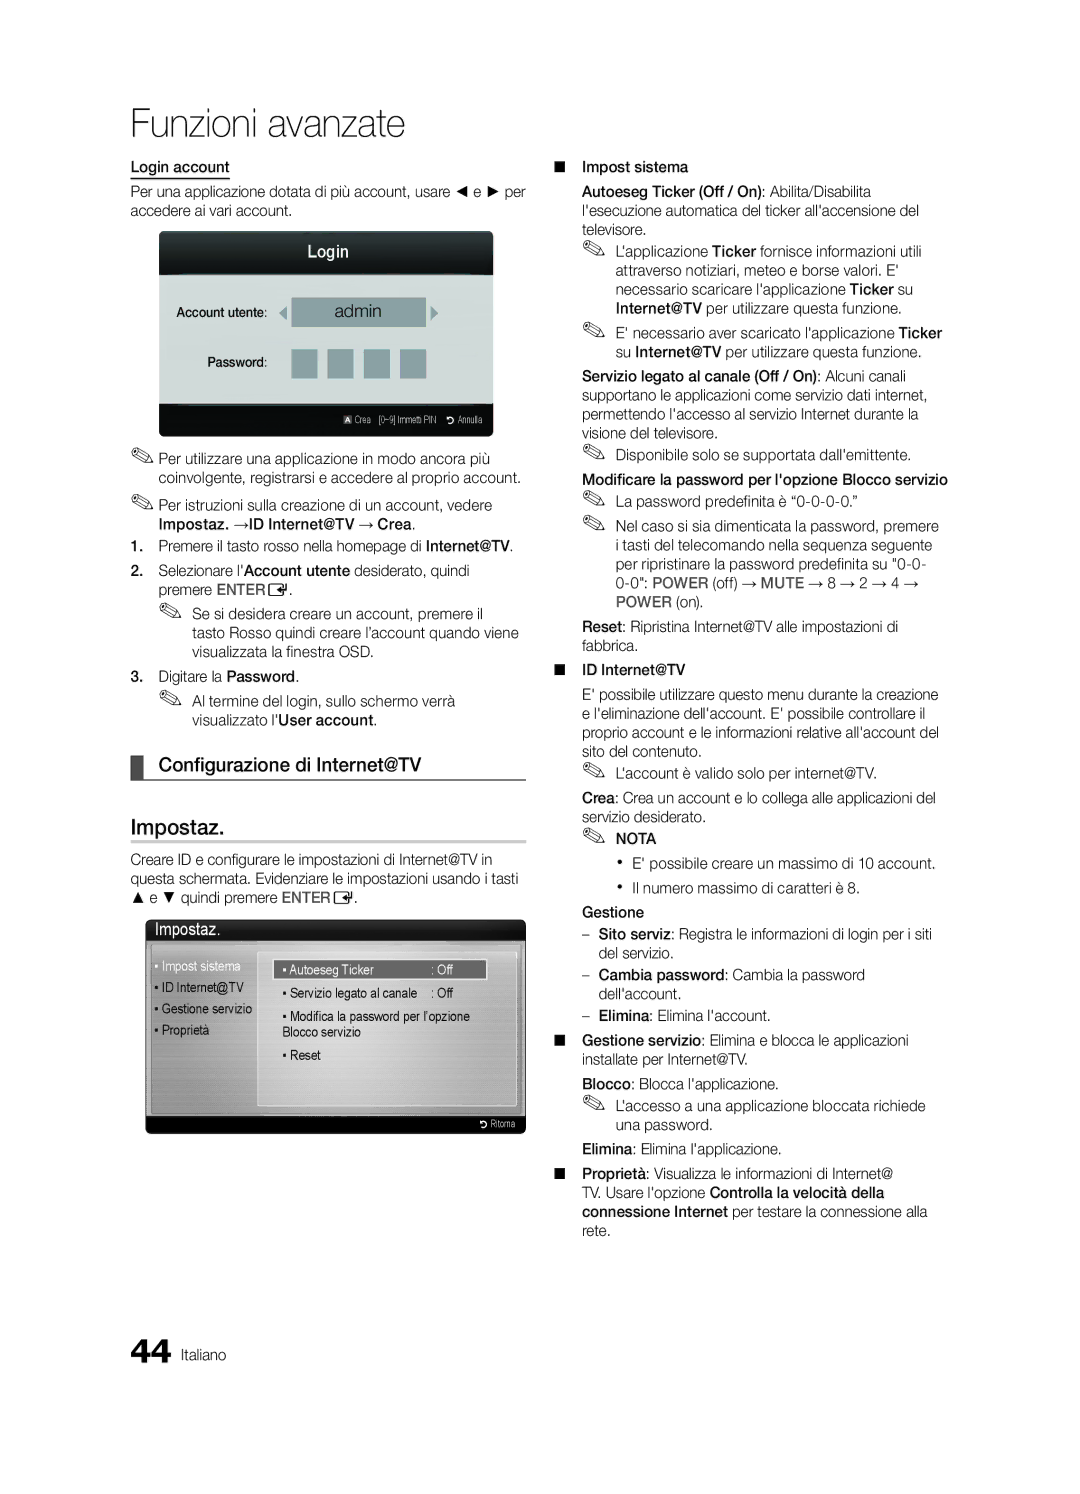 Samsung UE32C6500UPXZT manual Configurazione di Internet@TV, Account utente, ID Internet@TV Gestione servizio Proprietà 